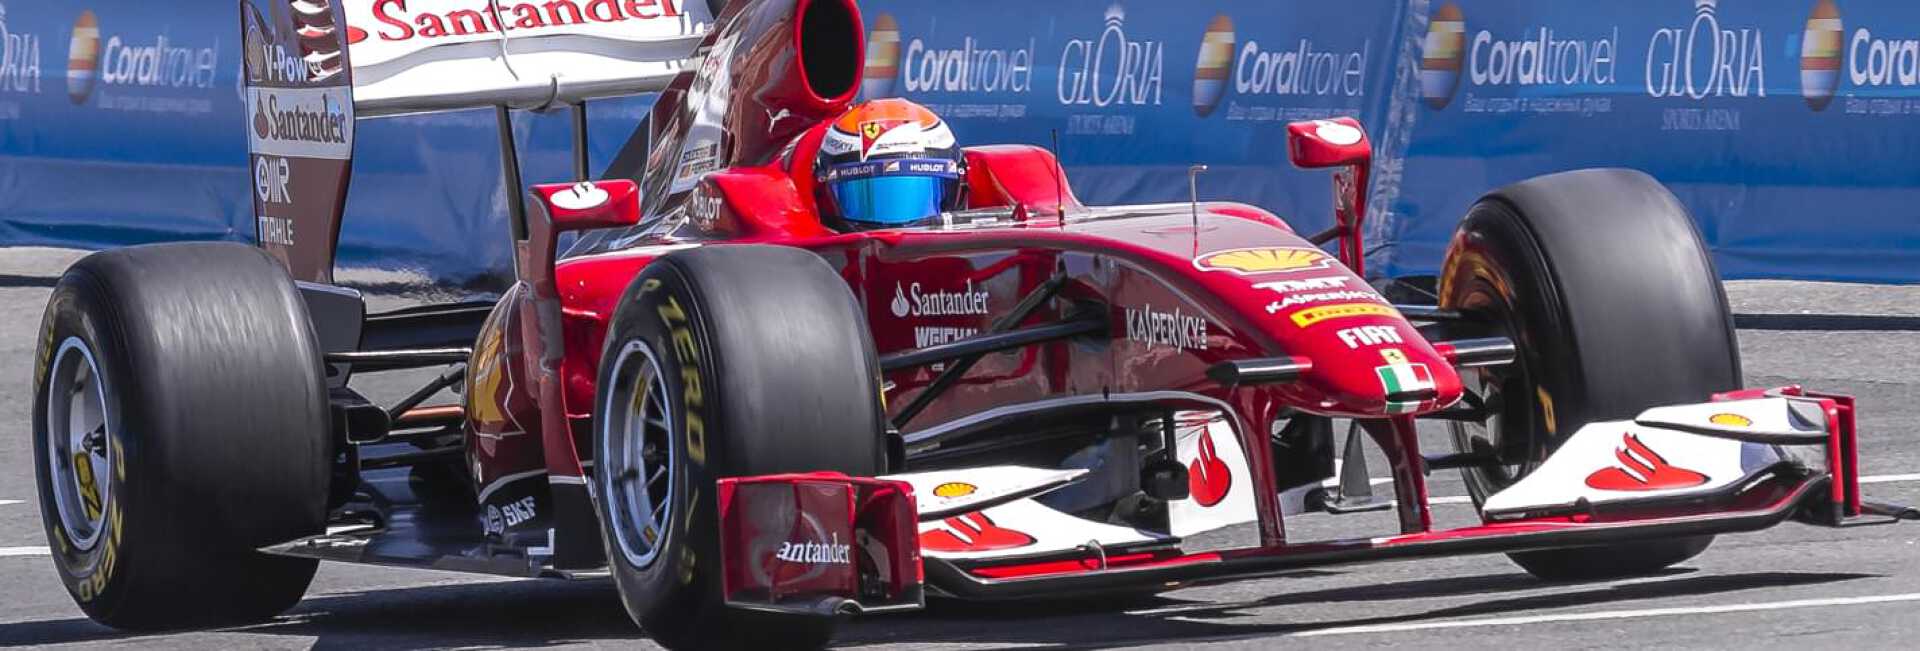 Voiture de course Ferrari rouge avec sponsors au Grand Prix de Formule 1 des États-Unis